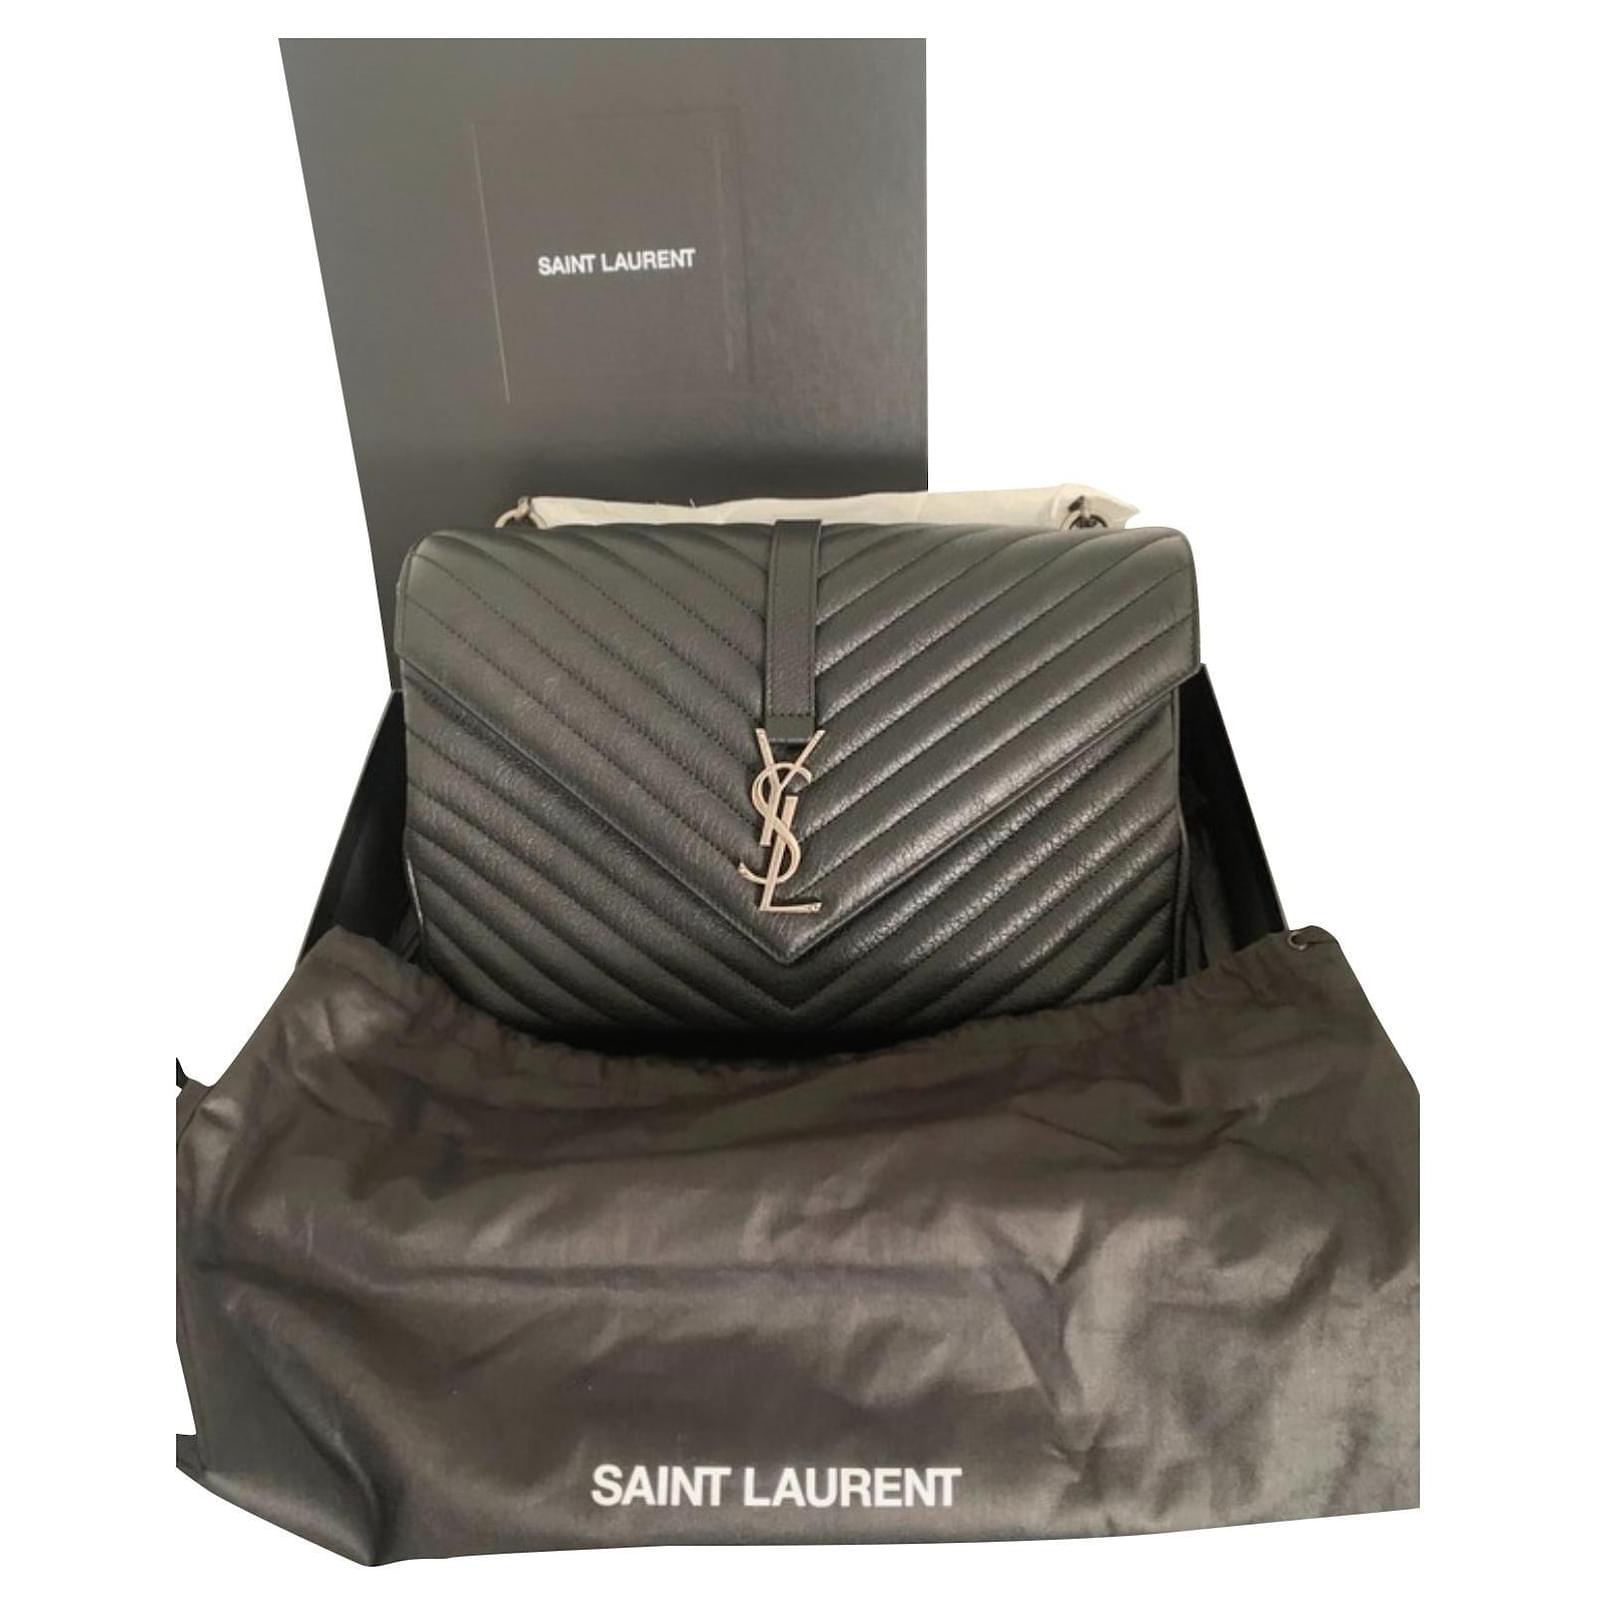 Yves Saint Laurent, Bags, Saint Laurent College Large Handbag